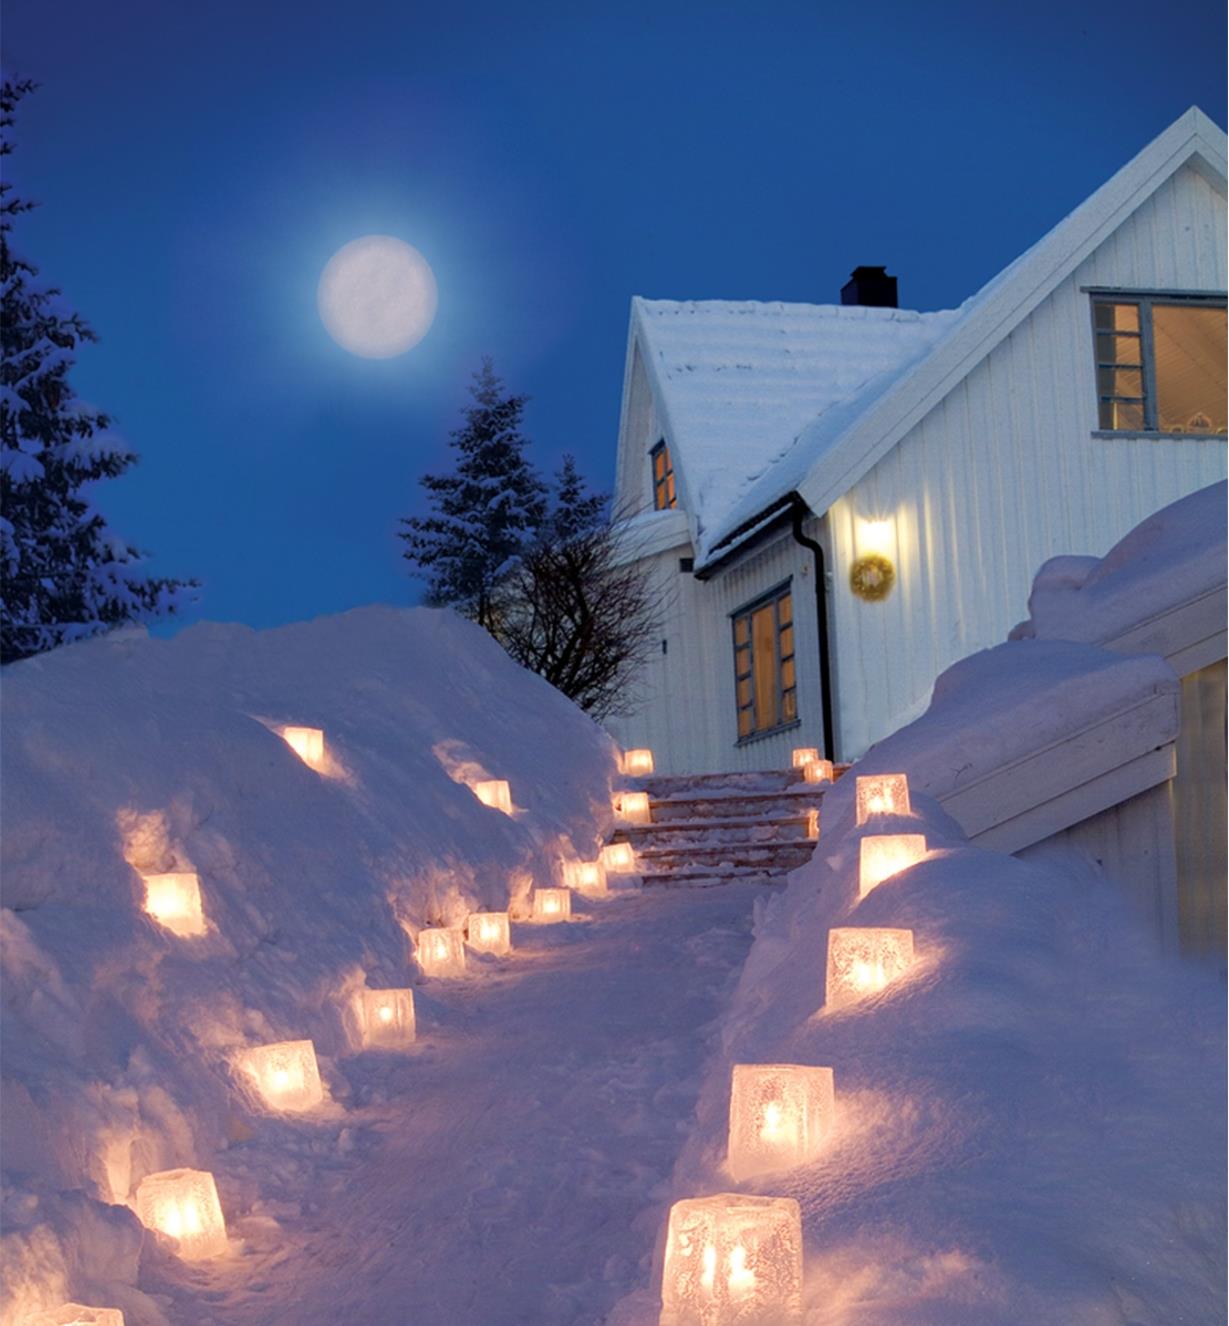 Illuminé par une vingtaine de lanternes de glace, passage enneigé menant à une maison